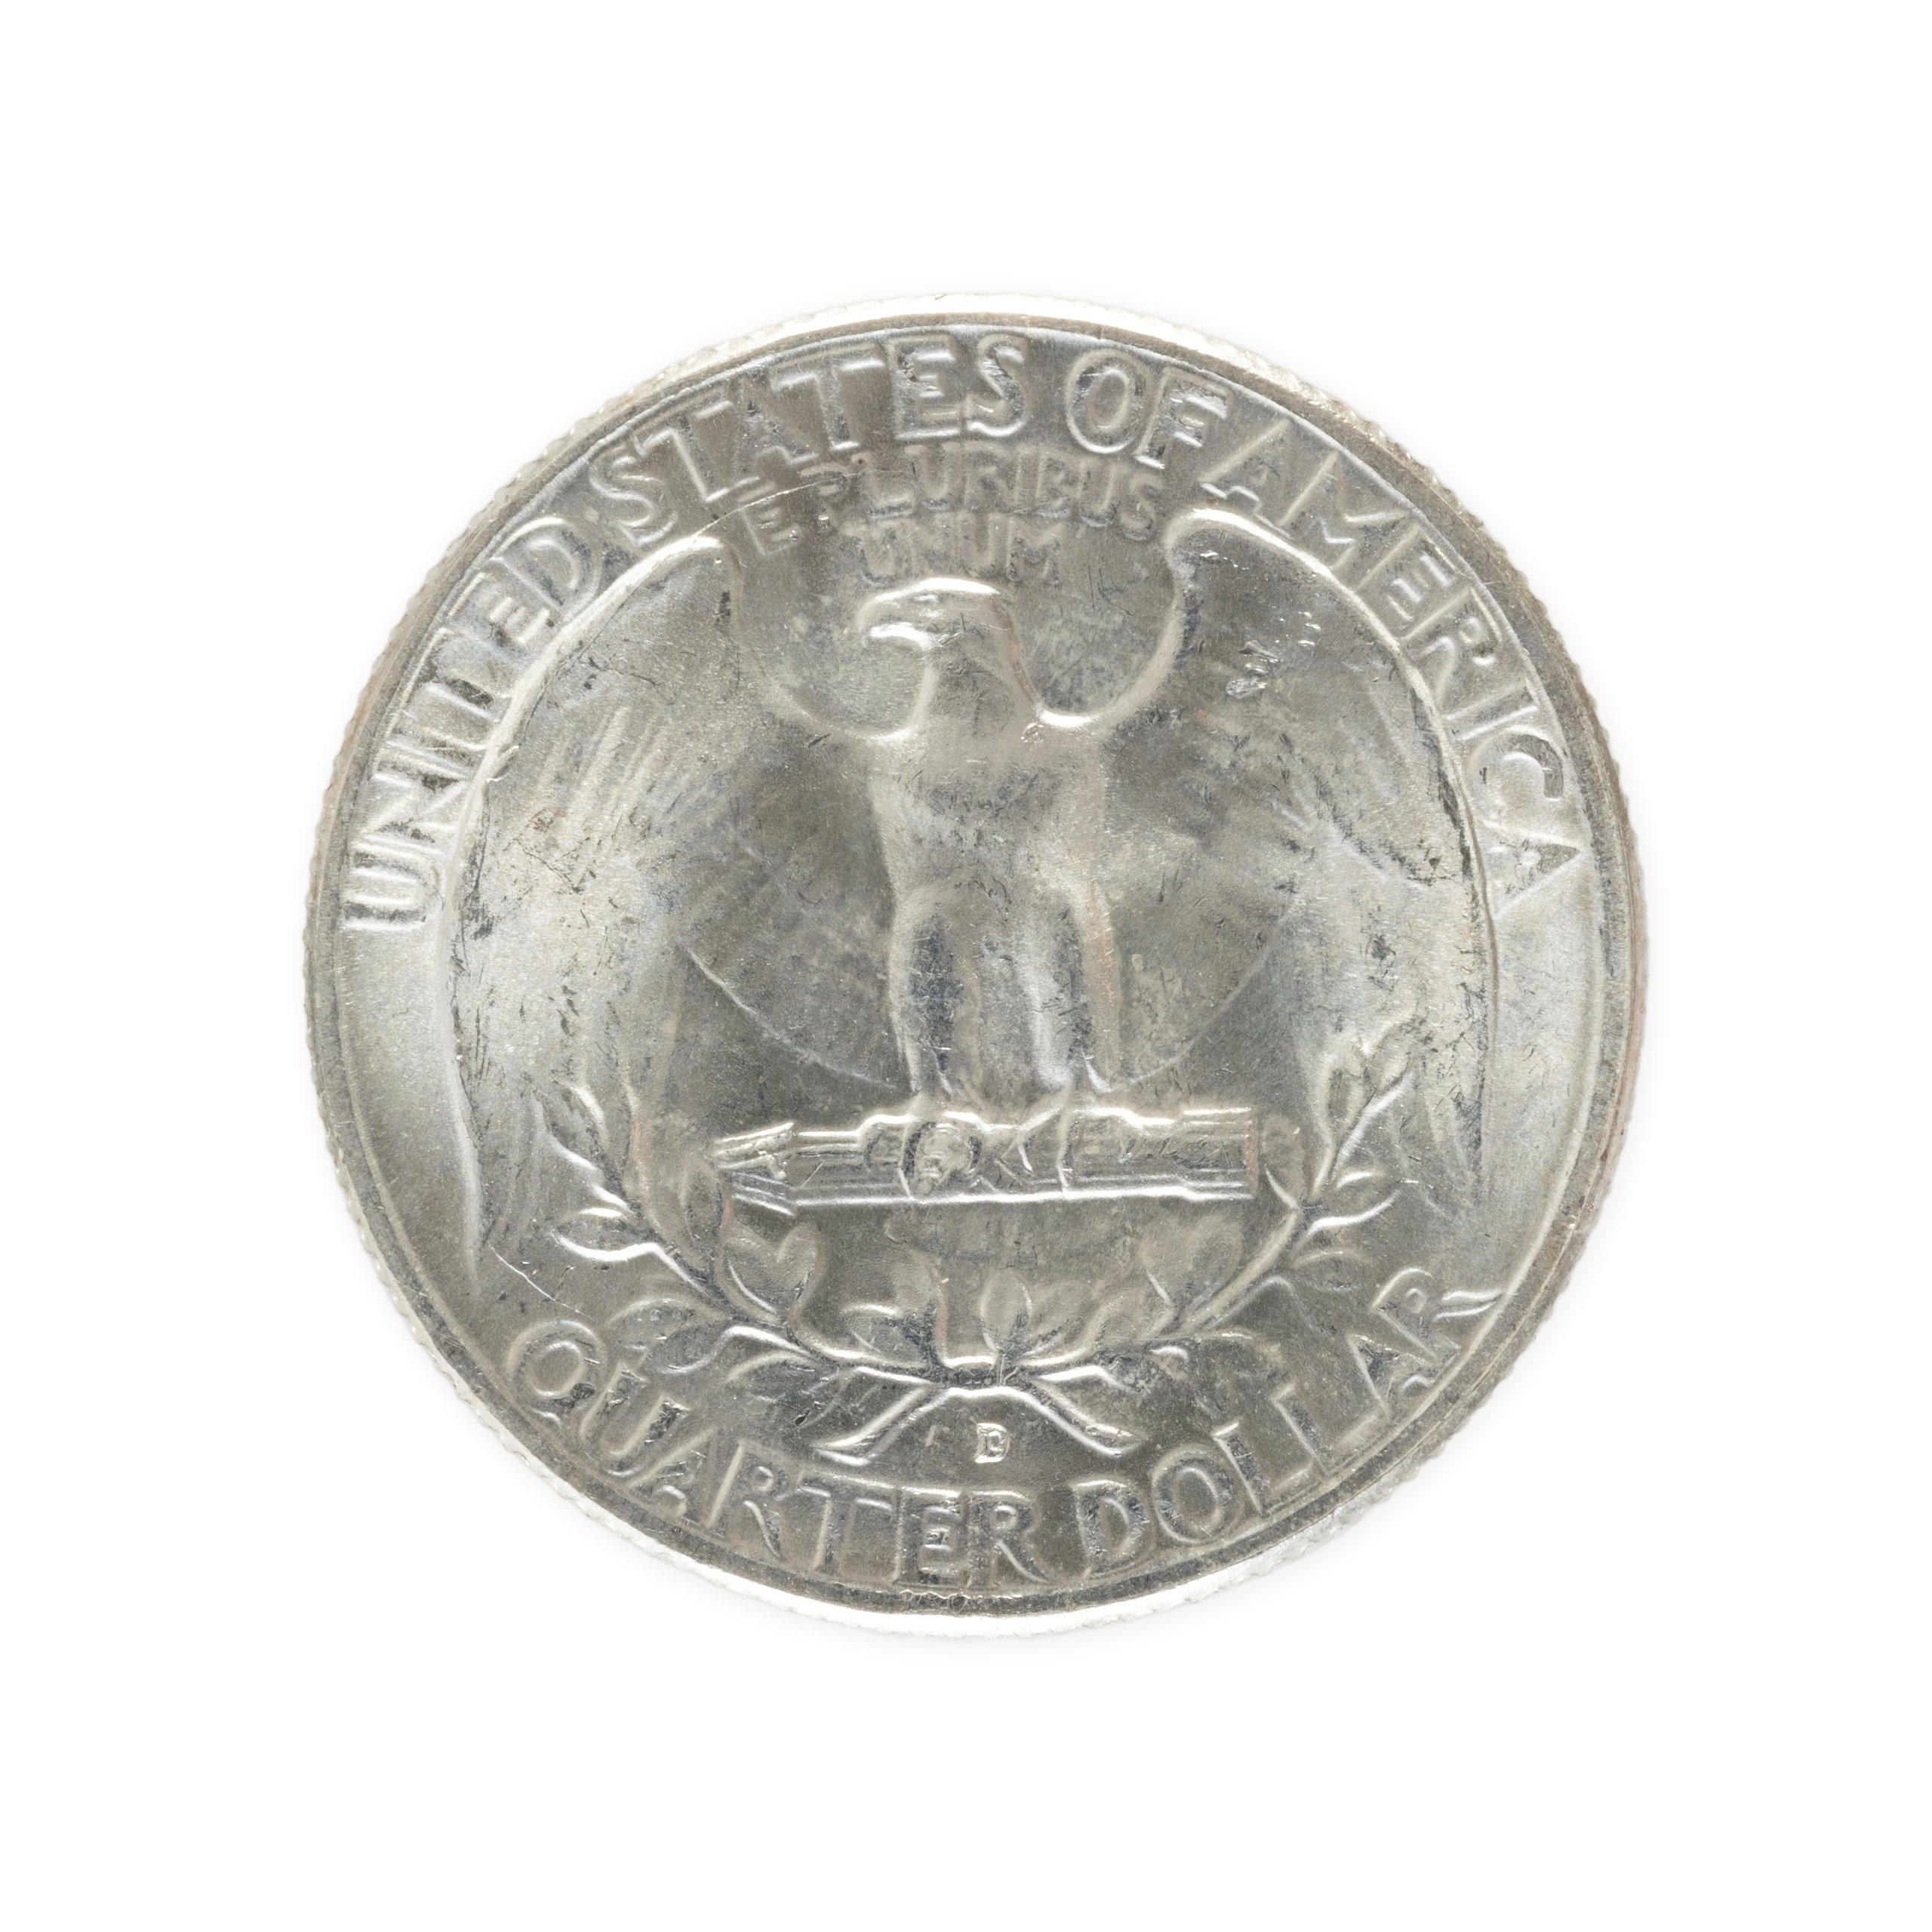 Powerhouse Collection - USA Quarter Dollar coin